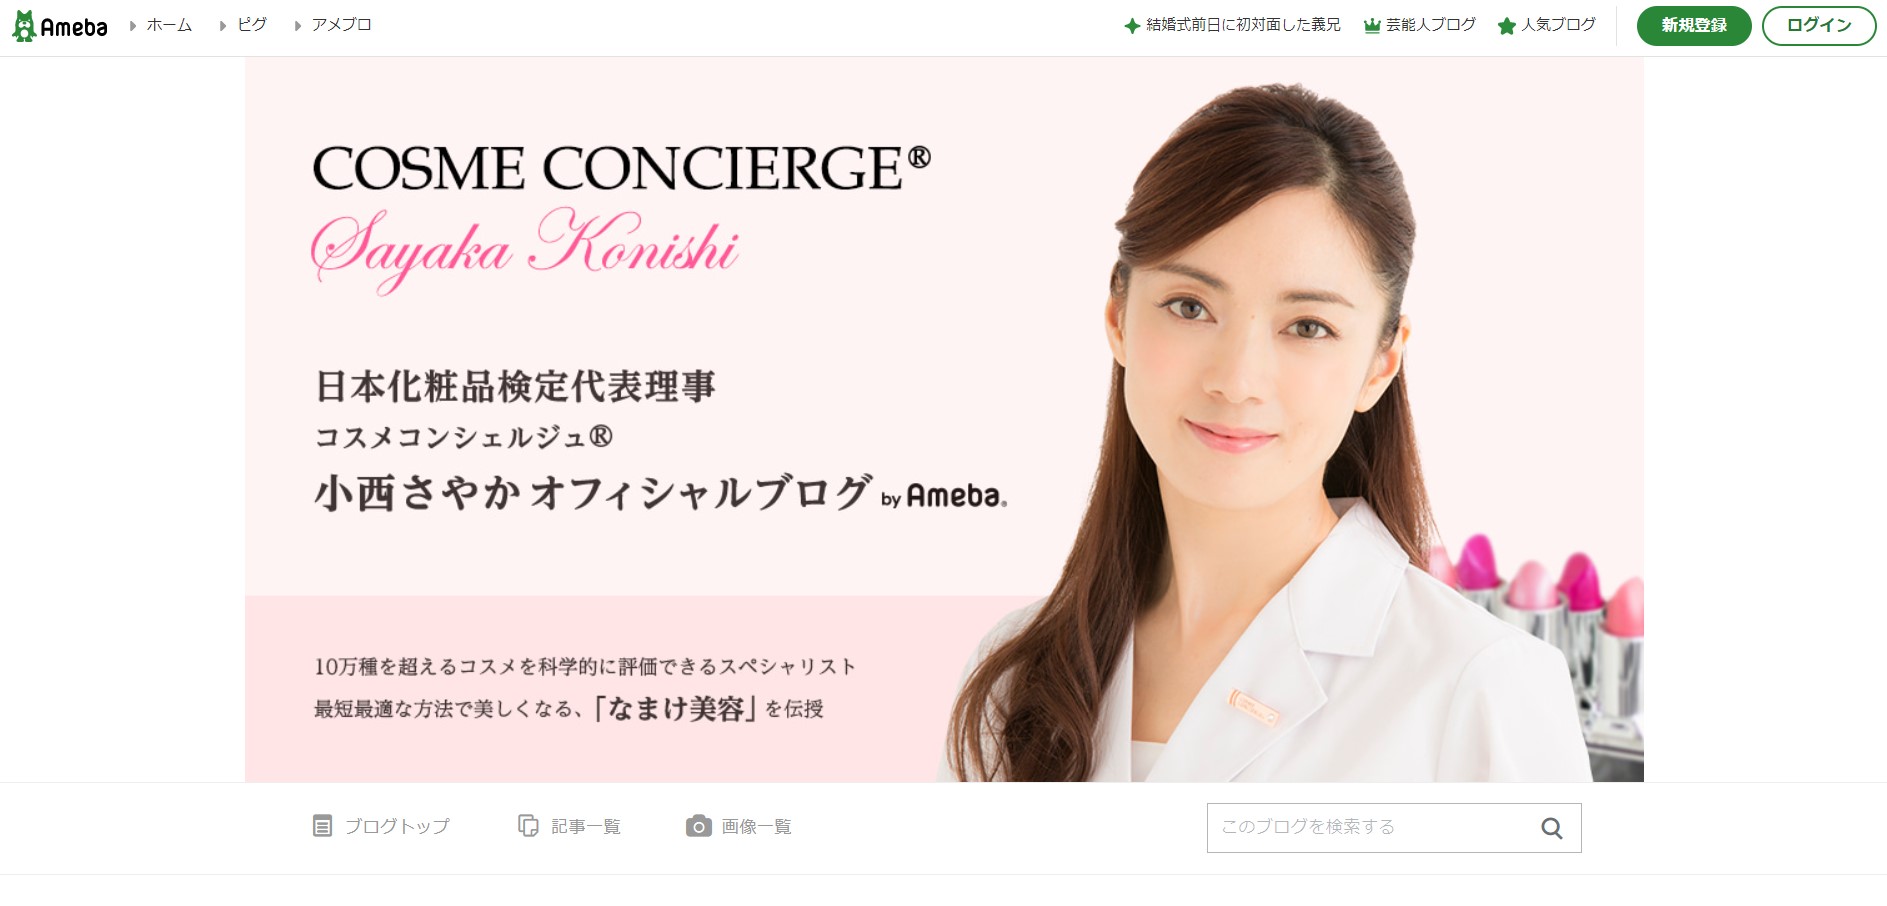 日本一のコスメマニアが、あなたに本当に合う化粧品選びをレクチャー